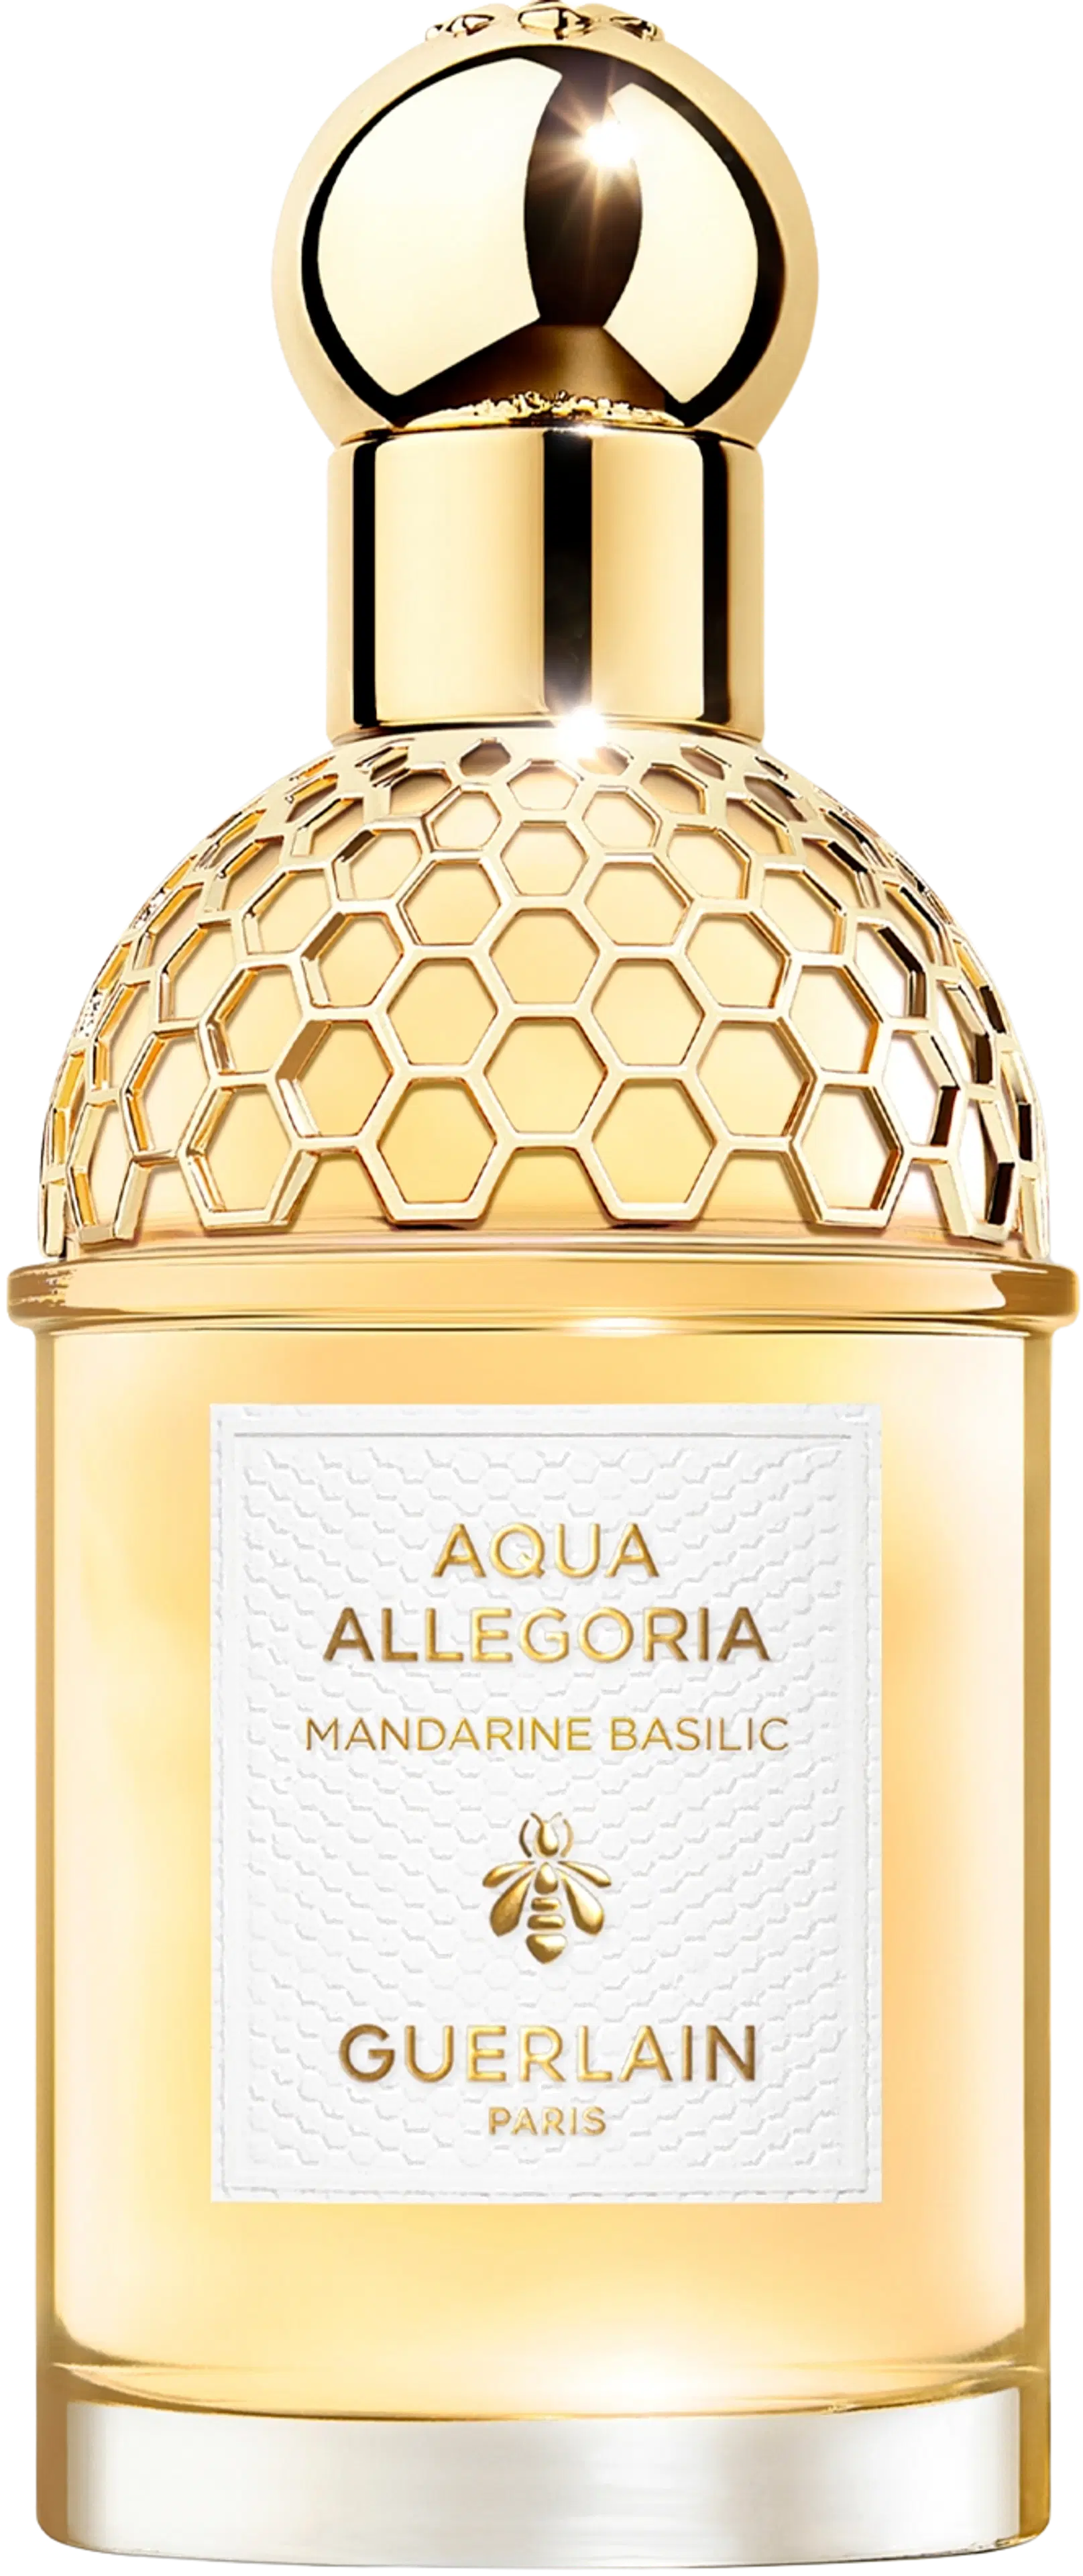 Guerlain Aqua Allegoria Mandarine Basilic EDT 75 ml